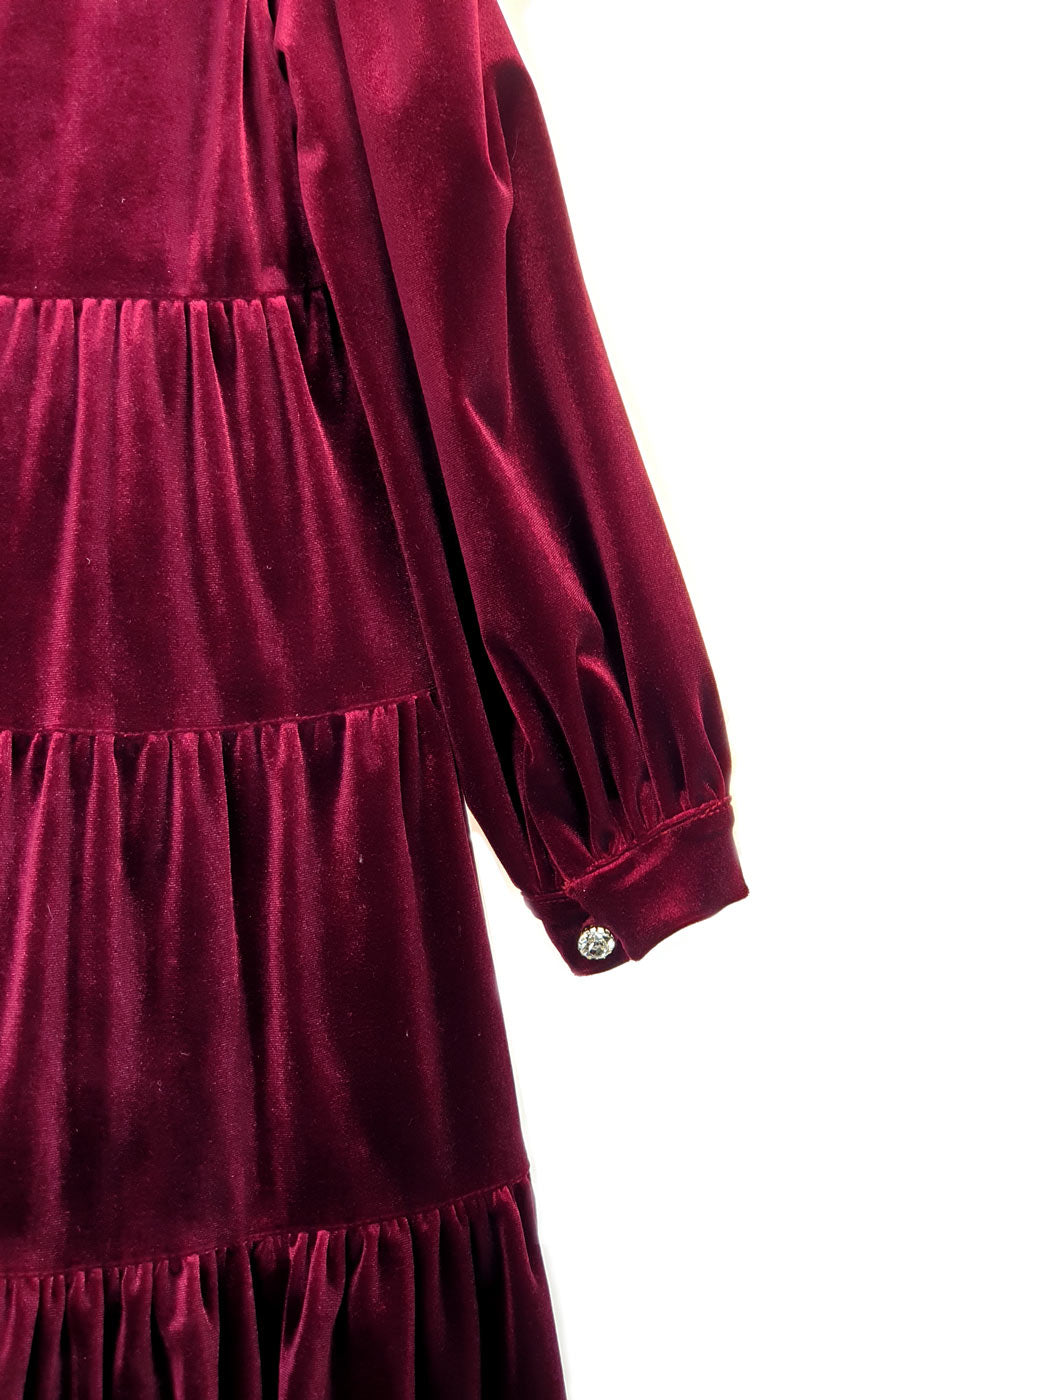 Girl's velvet dress - GENEVIEVE Bordeaux